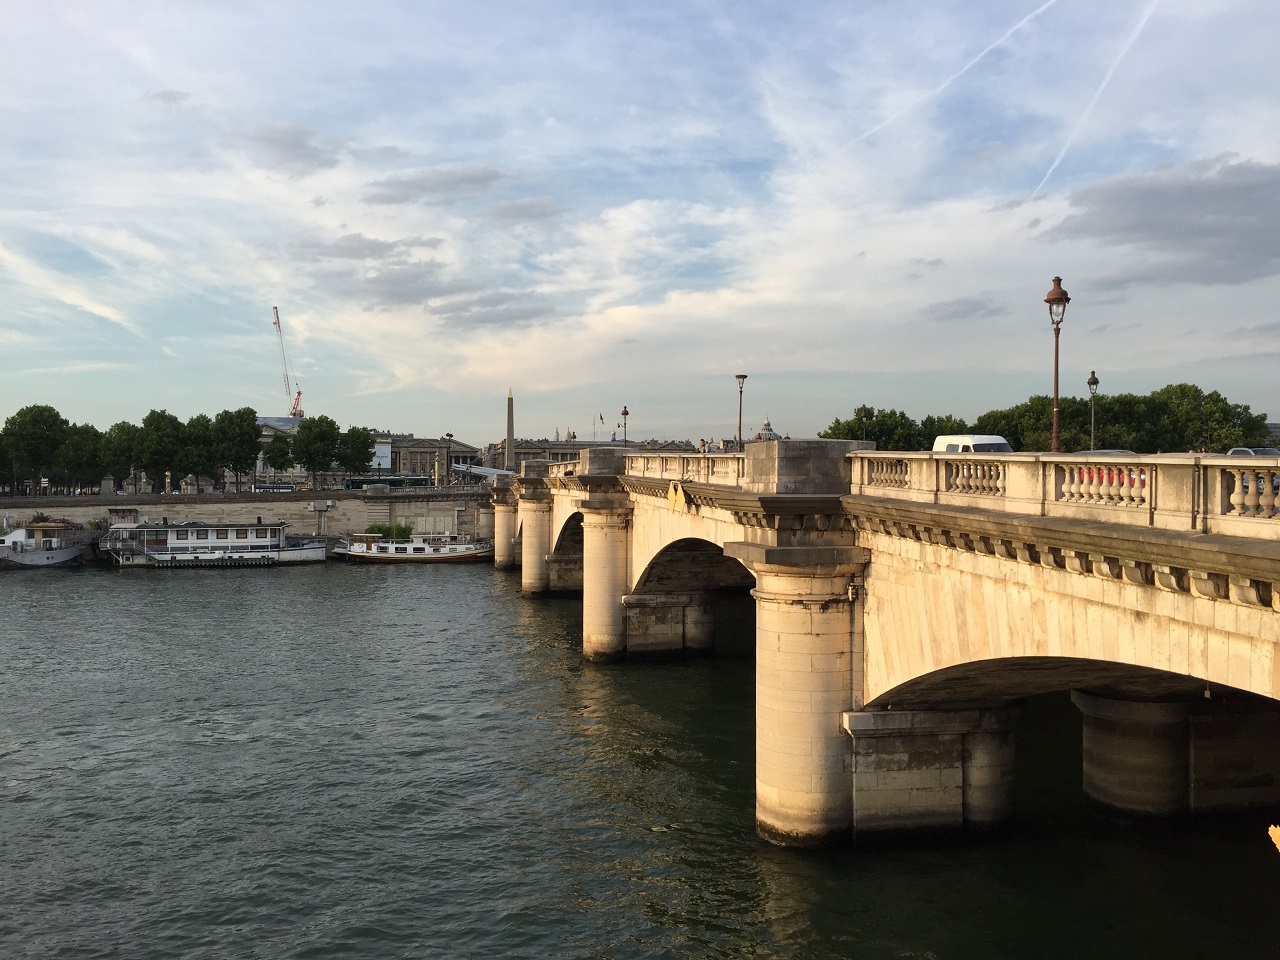 Bridge over the Seine in Paris